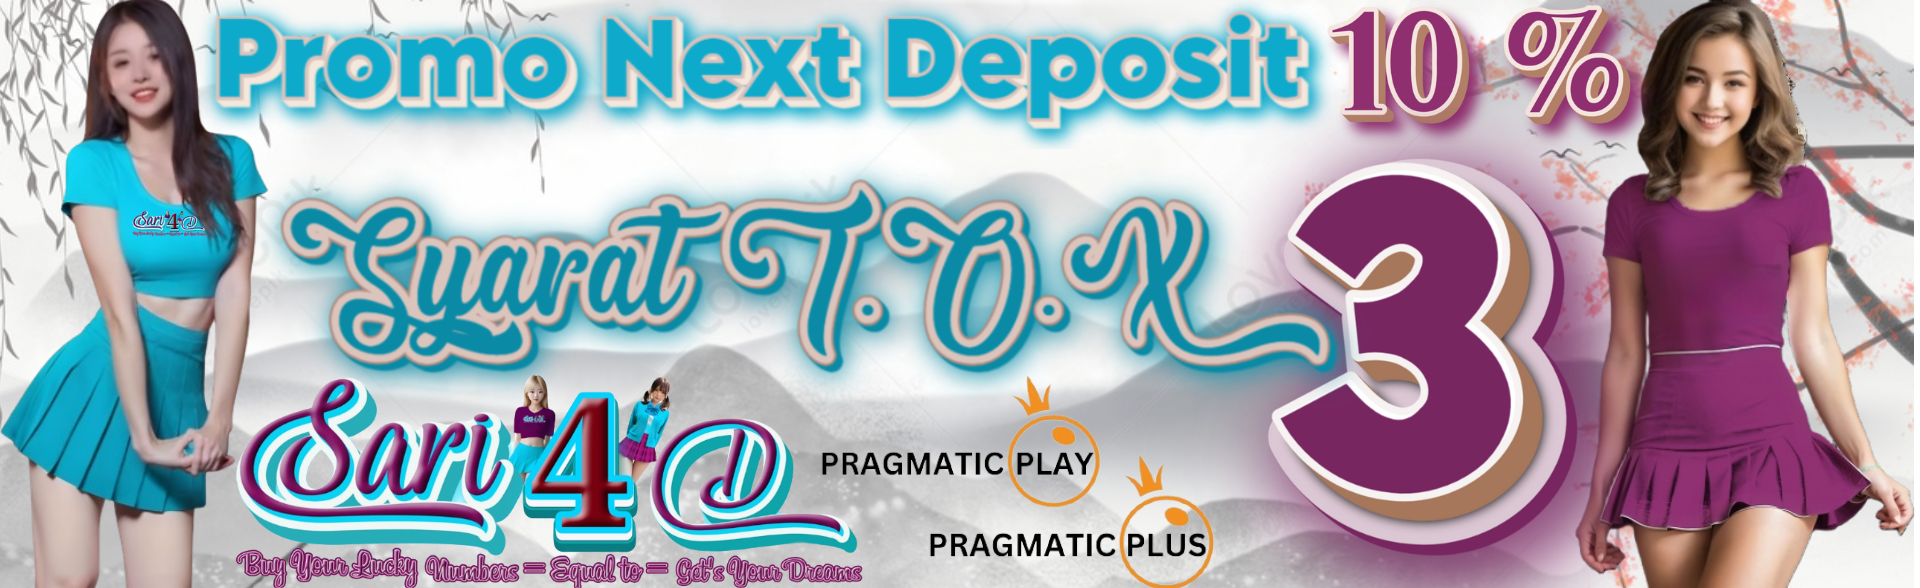 Next Deposit